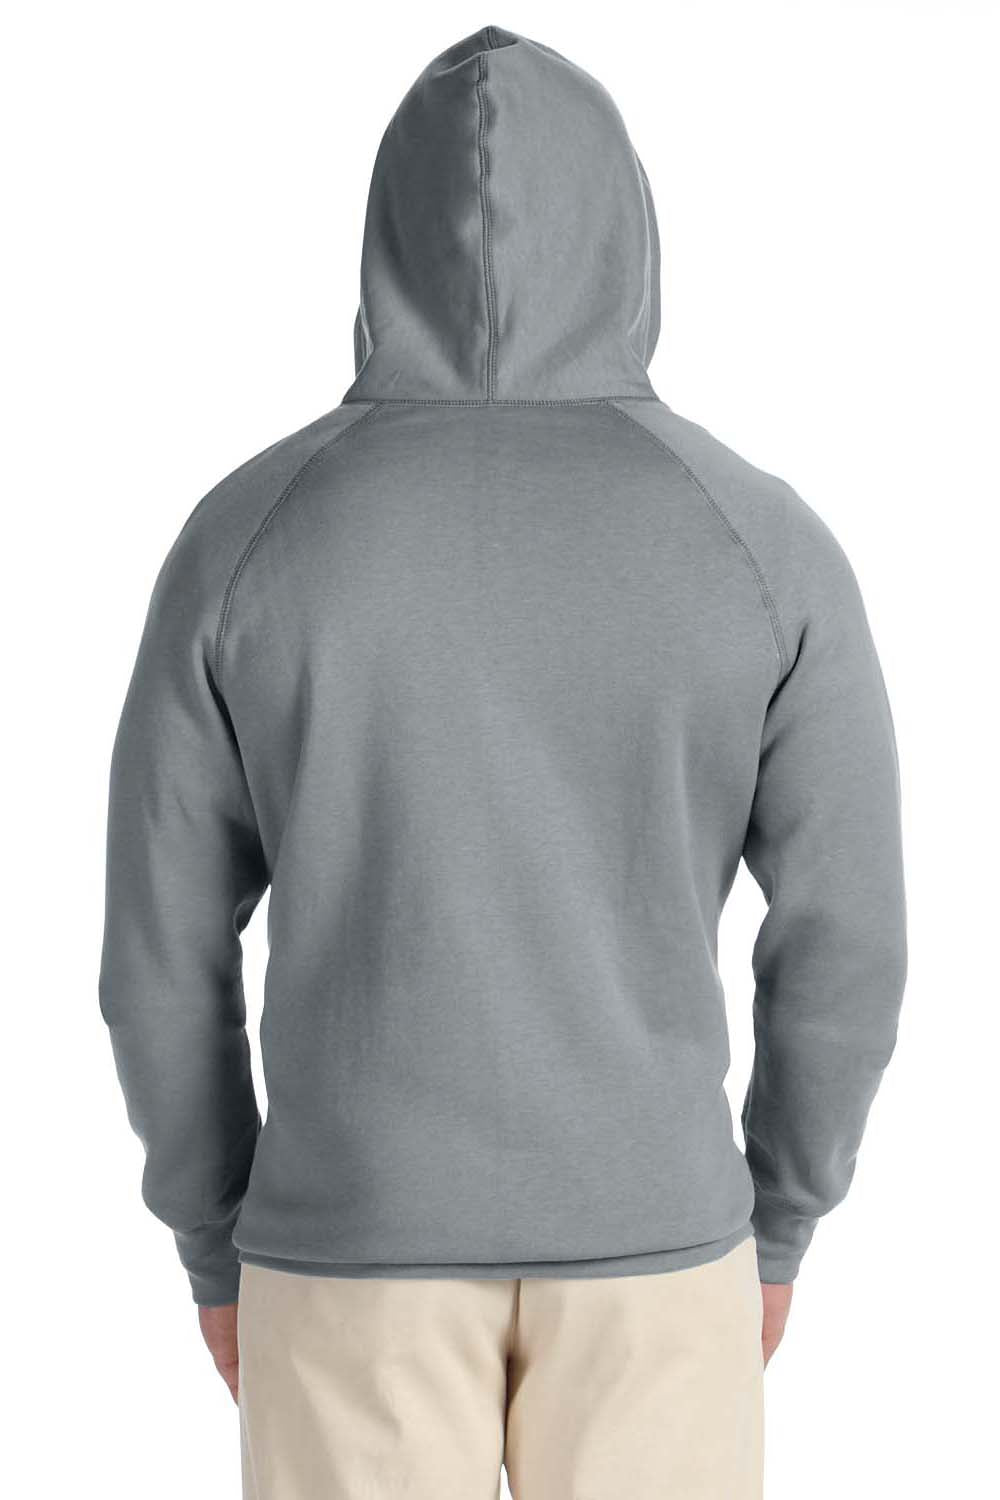 Hanes N280 Mens Nano Fleece Full Zip Hooded Sweatshirt Hoodie Vintage Grey Back